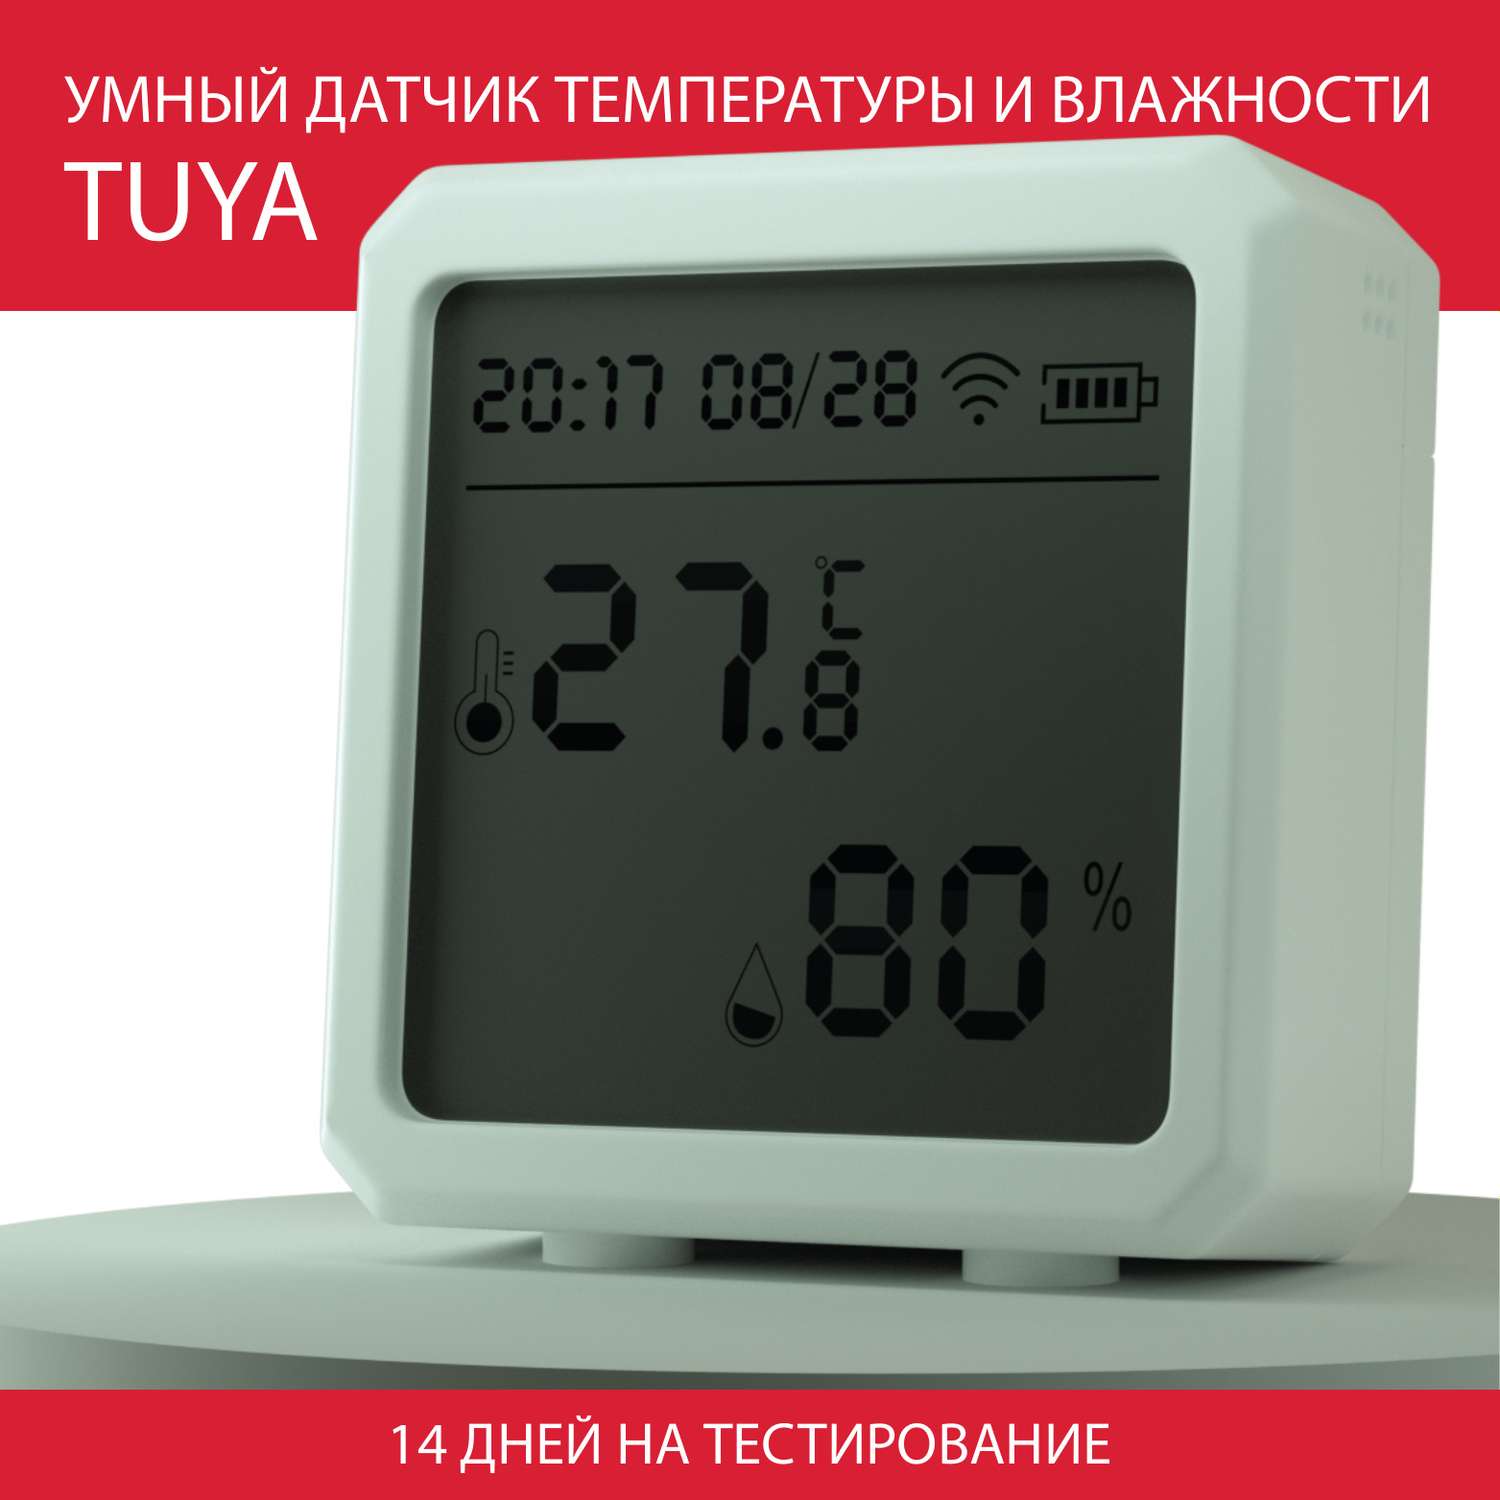 Датчик микроклимата QUIVIRA температуры и влажности с ЖК-дисплеем часами и датой - фото 1